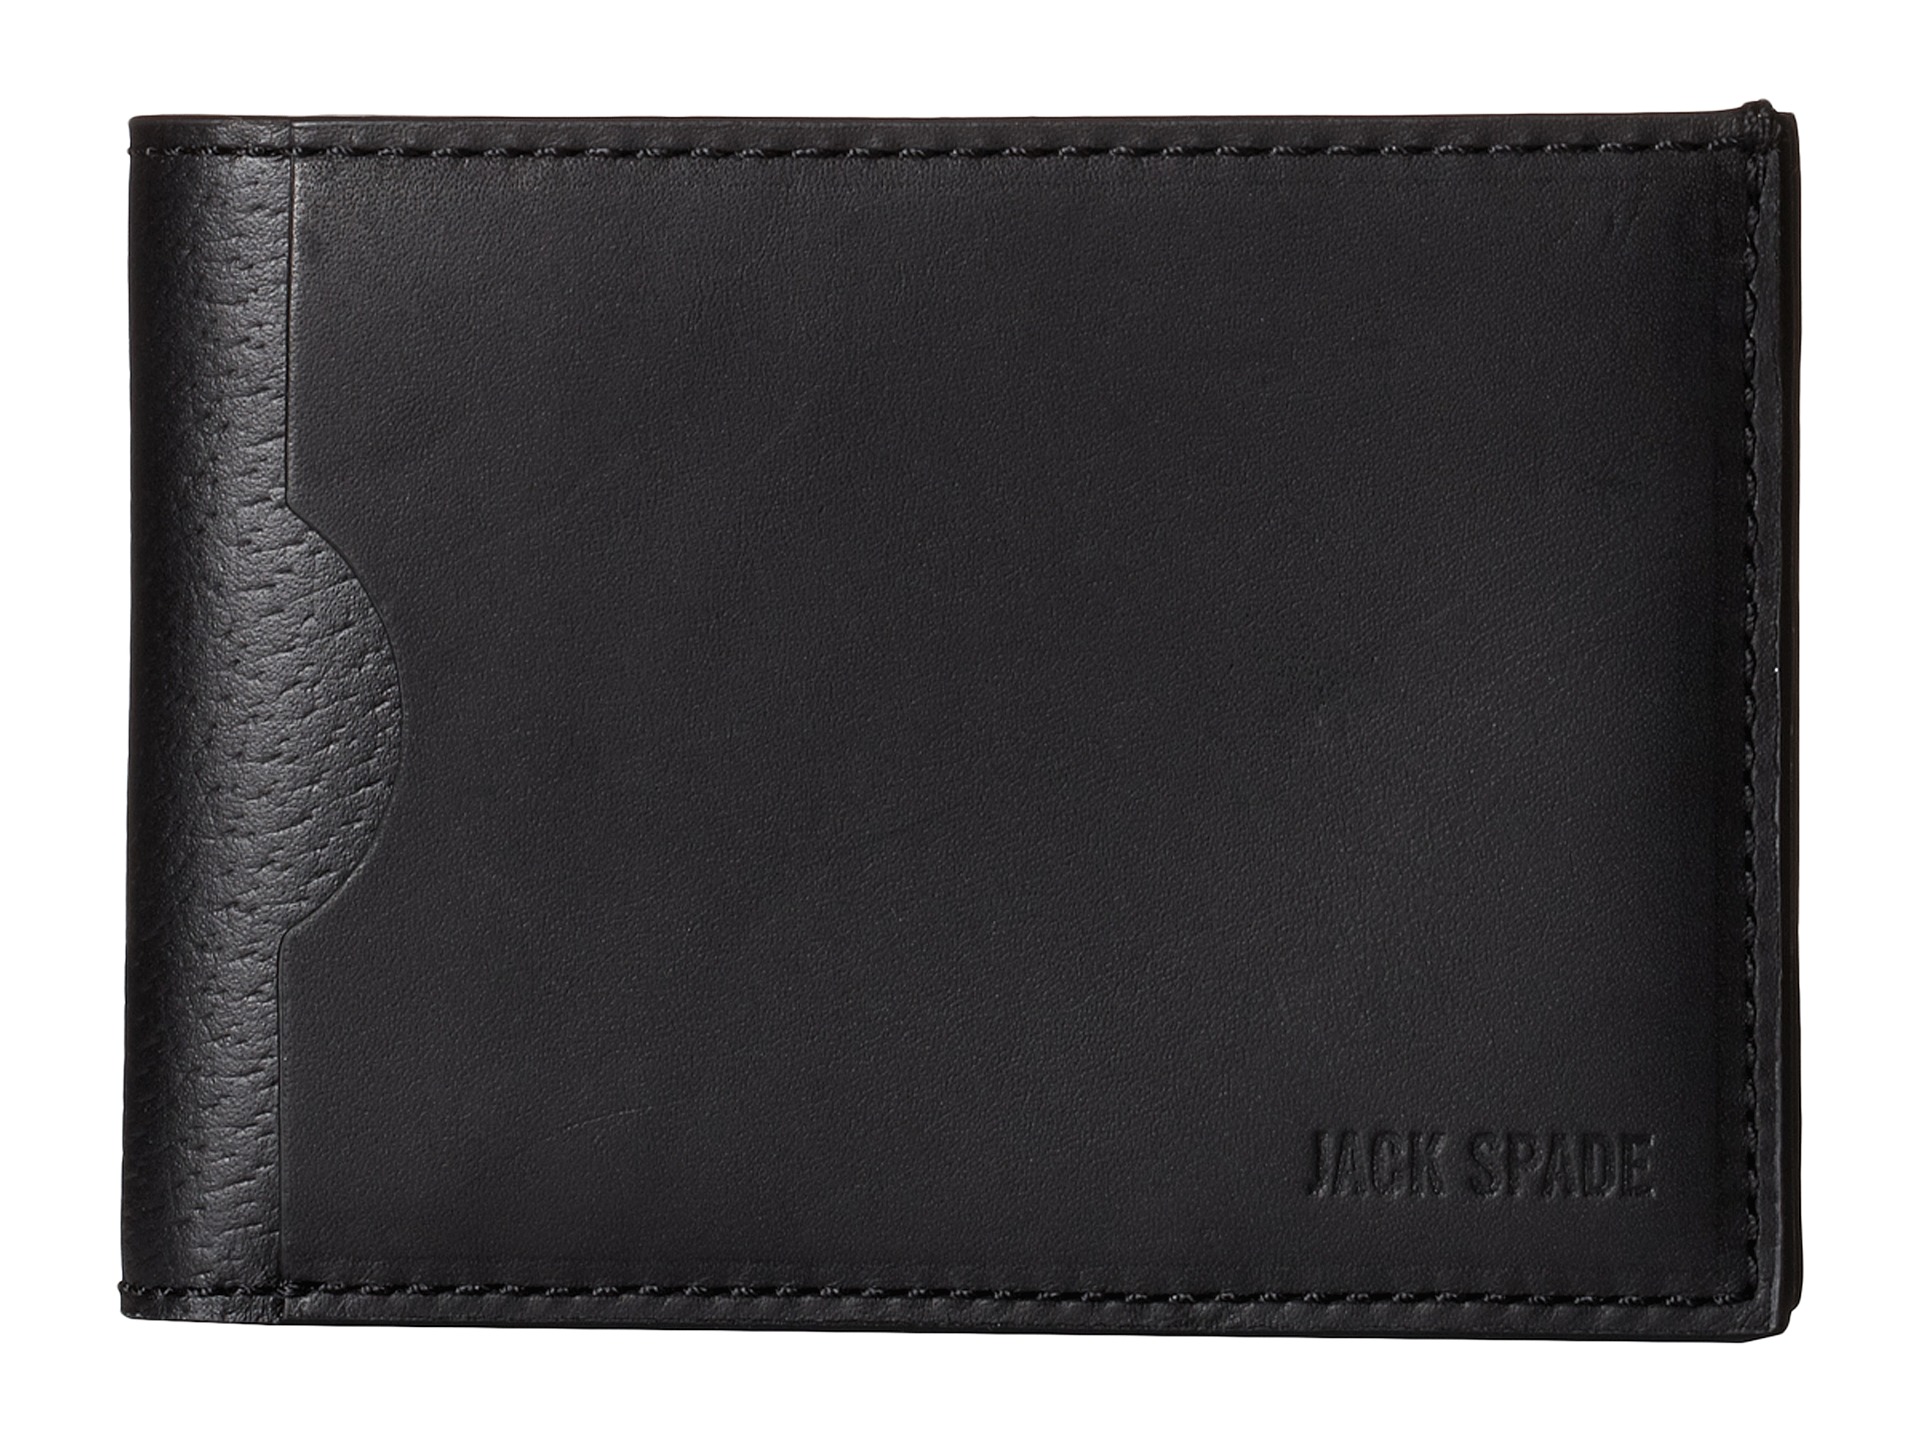 Jack Spade Grant Leather Index Wallet Black